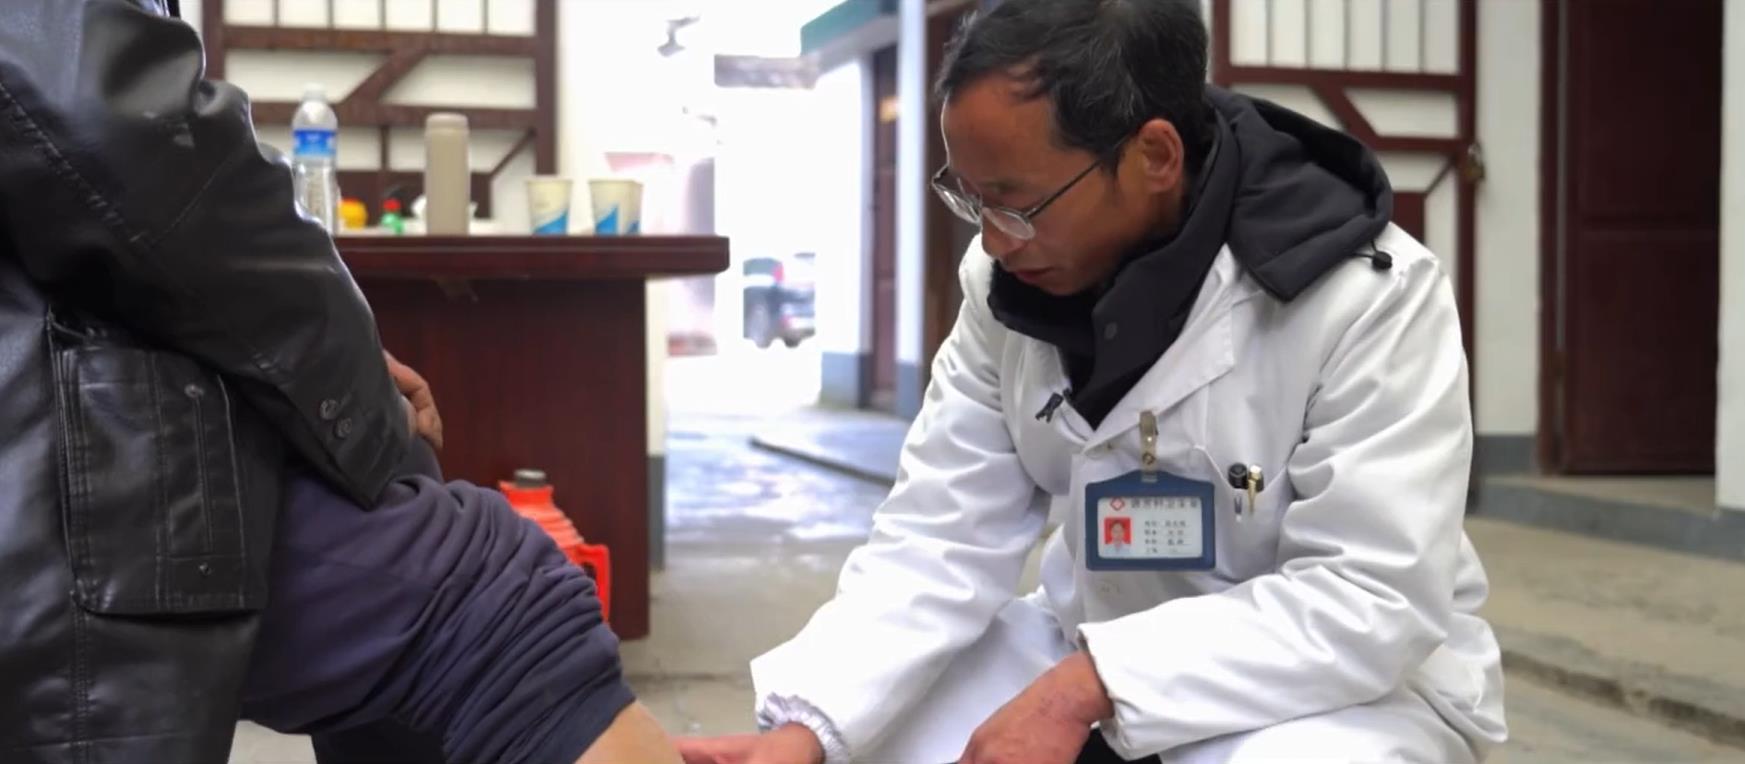 【视频】新春走基层 | 一位乡村医生30年的坚守